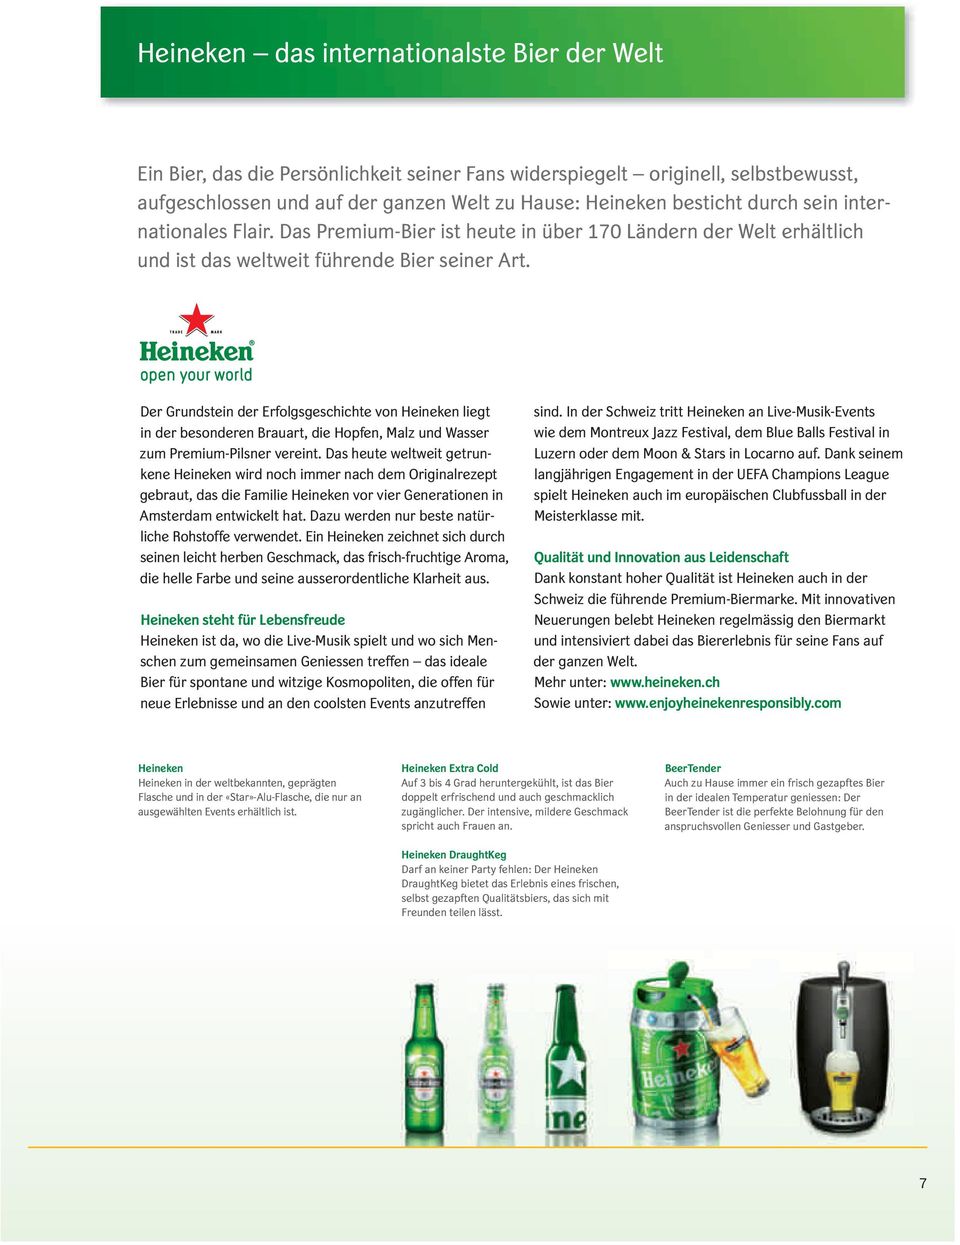 Der Grundstein der Erfolgsgeschichte von Heineken liegt in der besonderen Brauart, die Hopfen, Malz und Wasser zum Premium-Pilsner vereint.